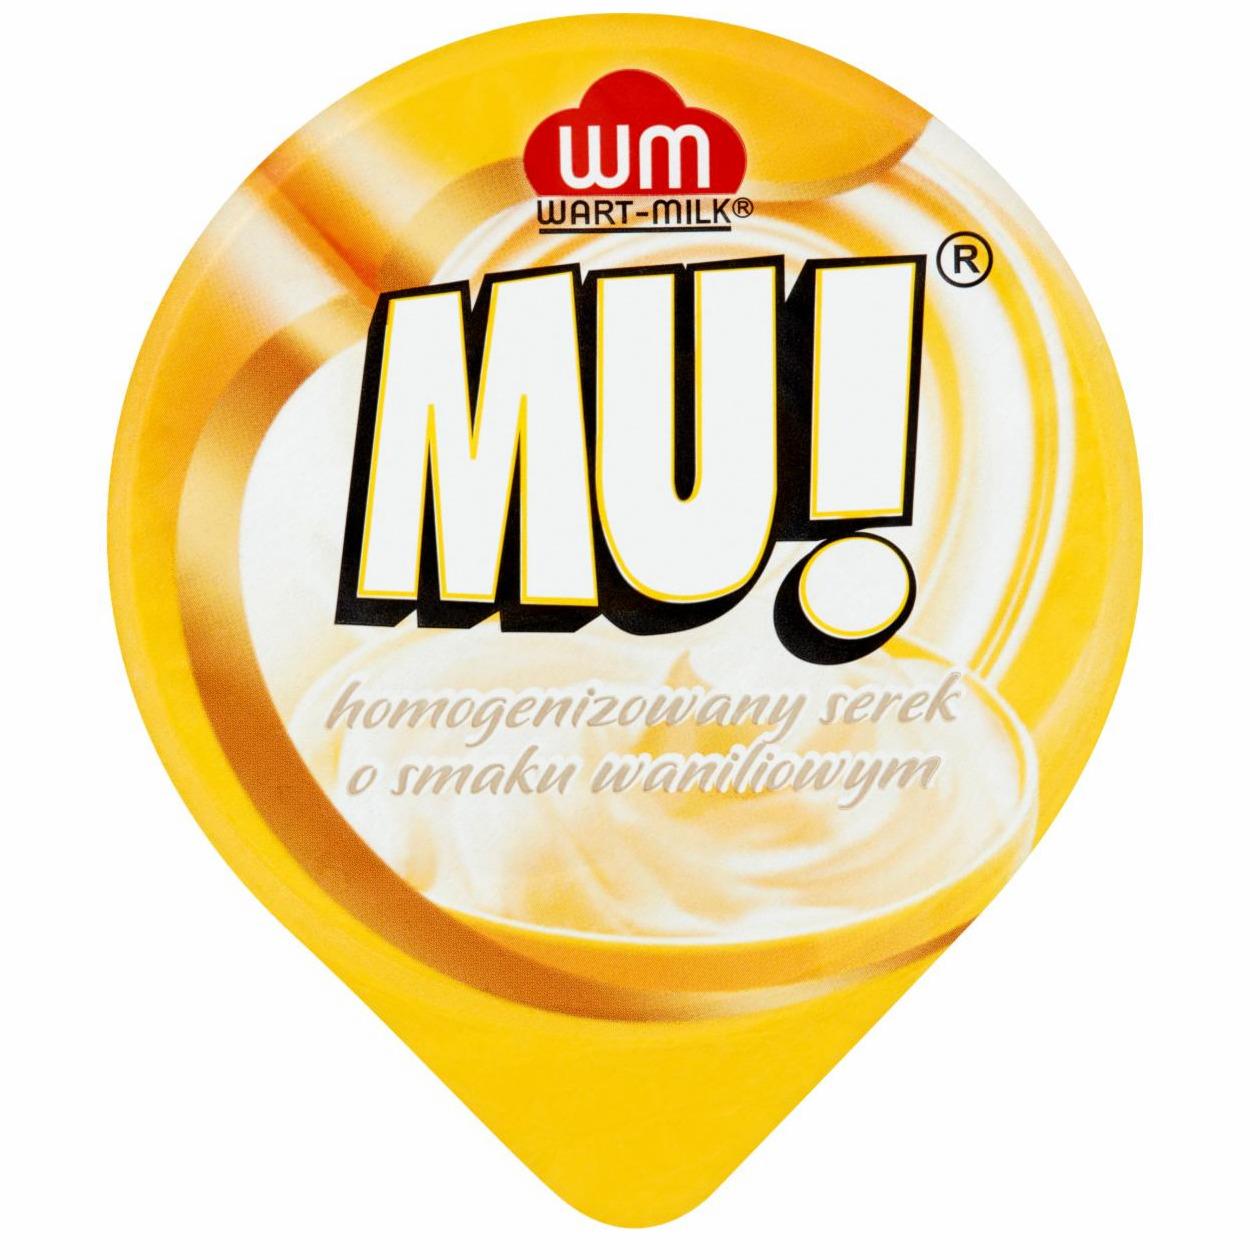 Zdjęcia - Homogenizowany serek o smaku waniliowym MU! Wart Milk